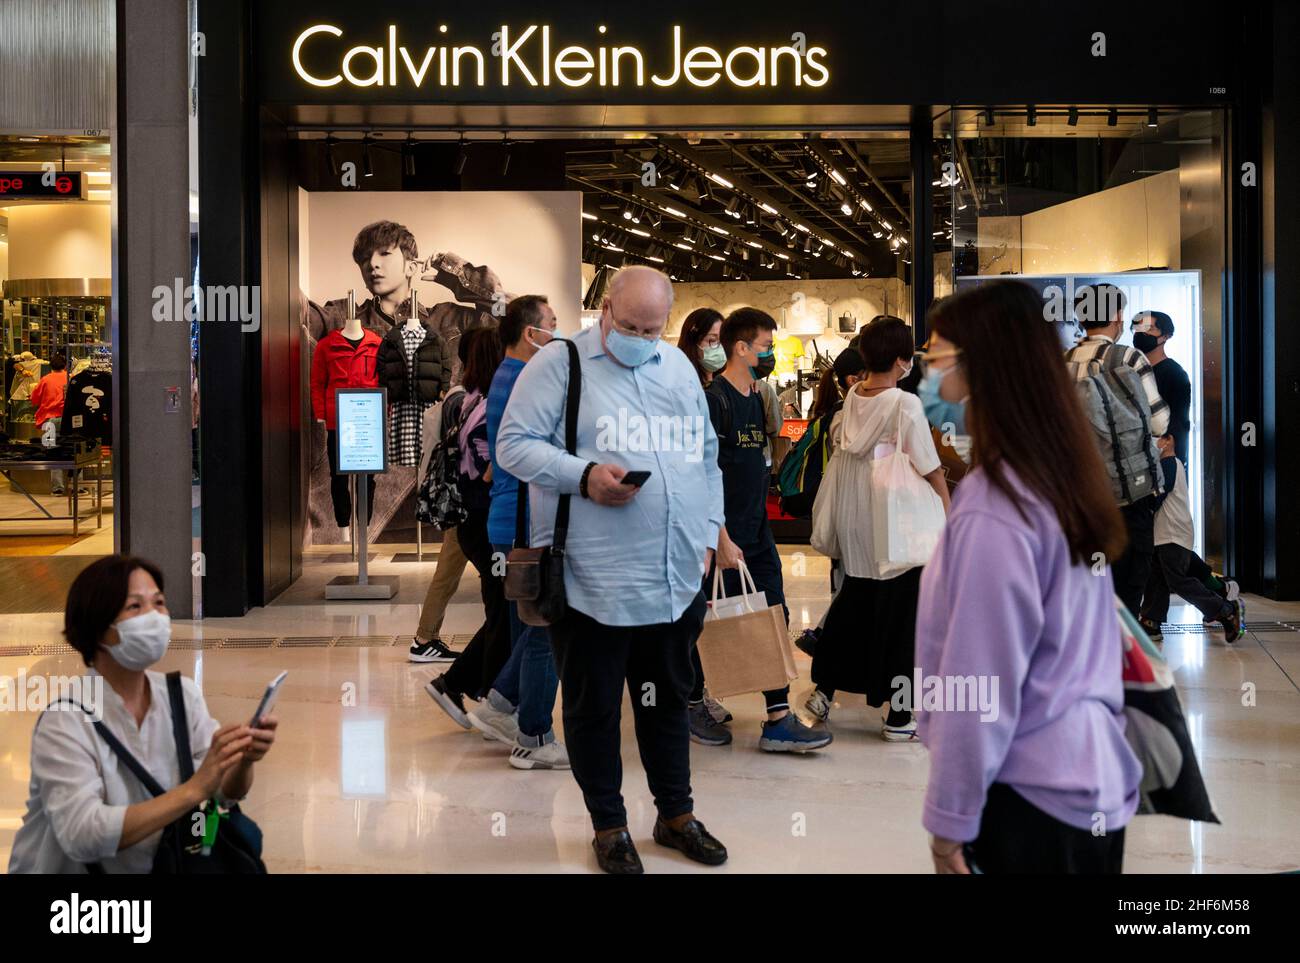 Calvin klein jeans store immagini e fotografie stock ad alta risoluzione -  Alamy